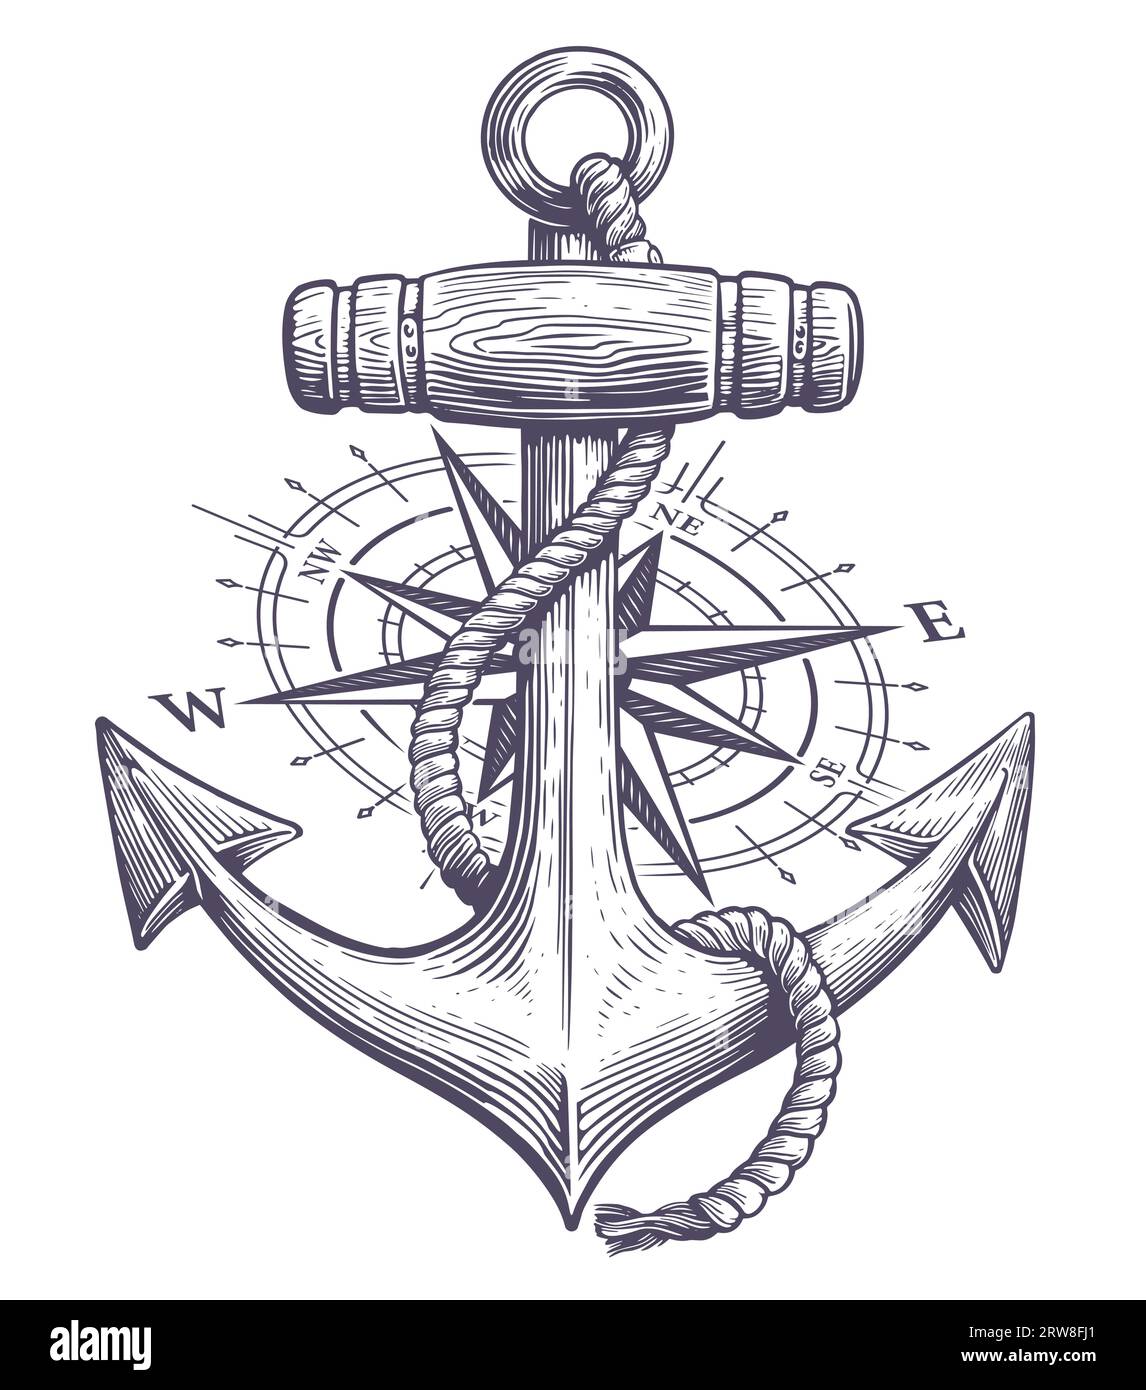 Anker mit Seil und nautischem Kompass in Gravur gezeichnet. Skizze Vintage Vektor Illustration Stock Vektor